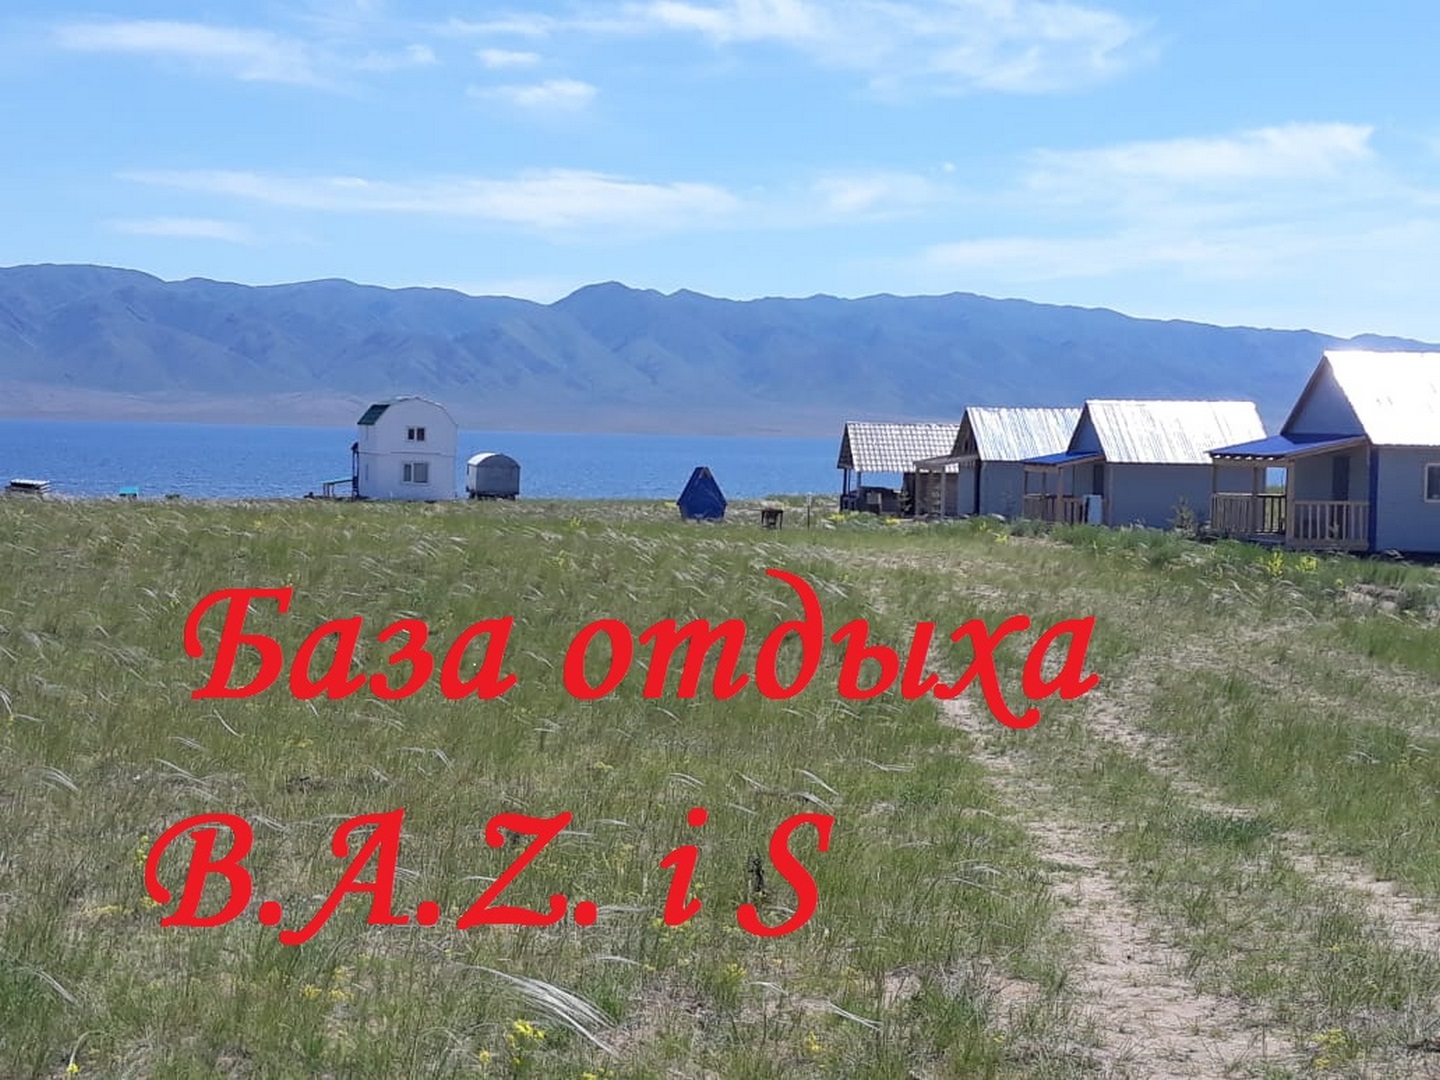 База отдыха «B.A.Z.и S.» - Limpopo Travel в Казахстане